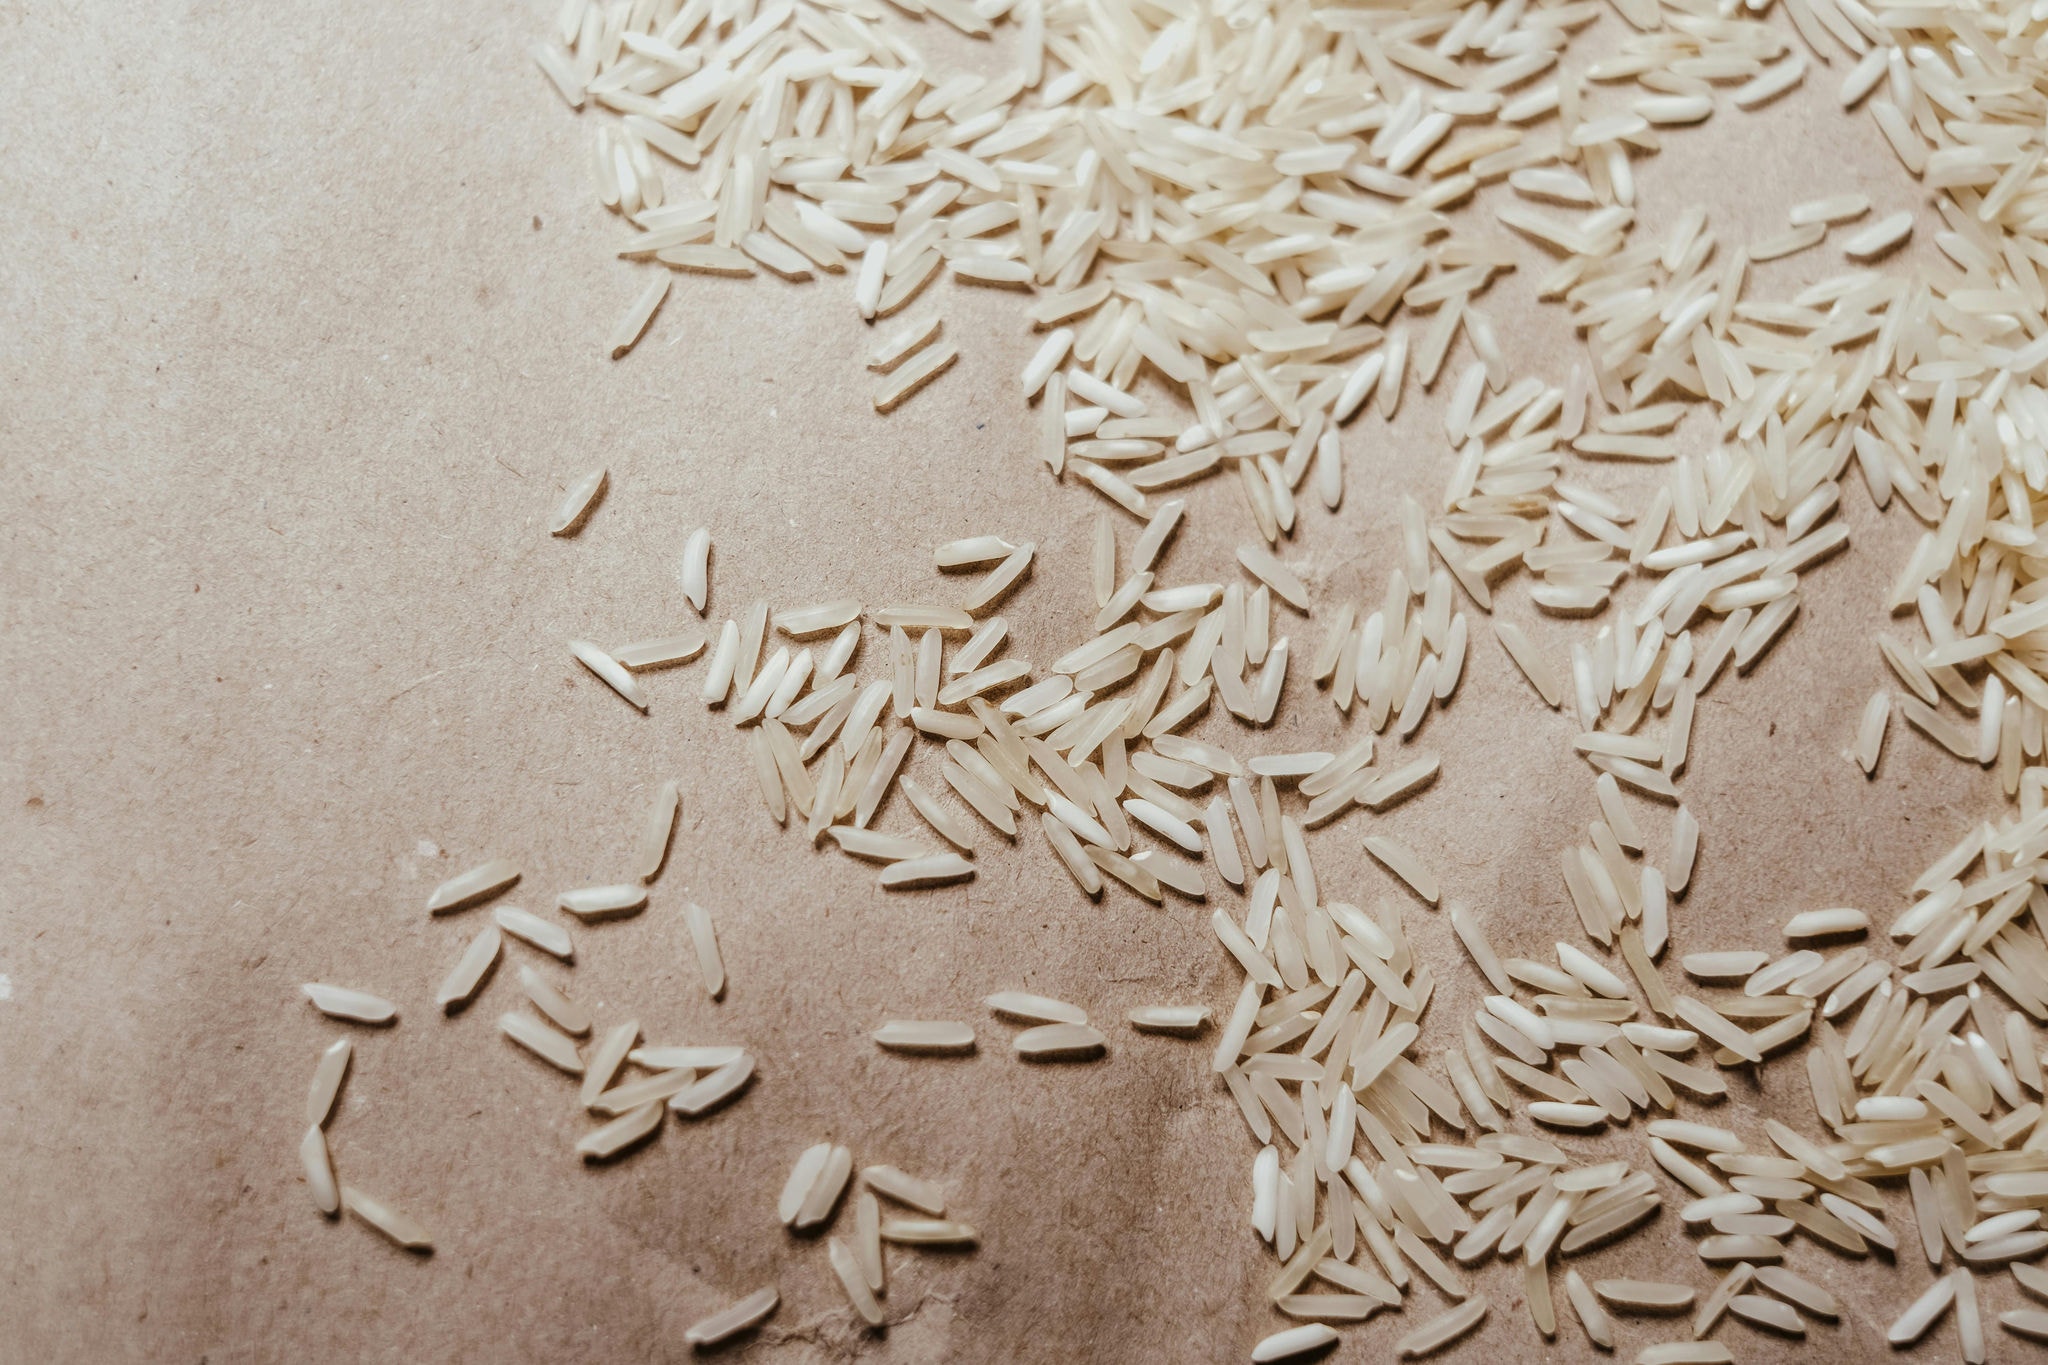 Quilo do arroz custa em média R$ 6 nos supermercados de Belo Horizonte